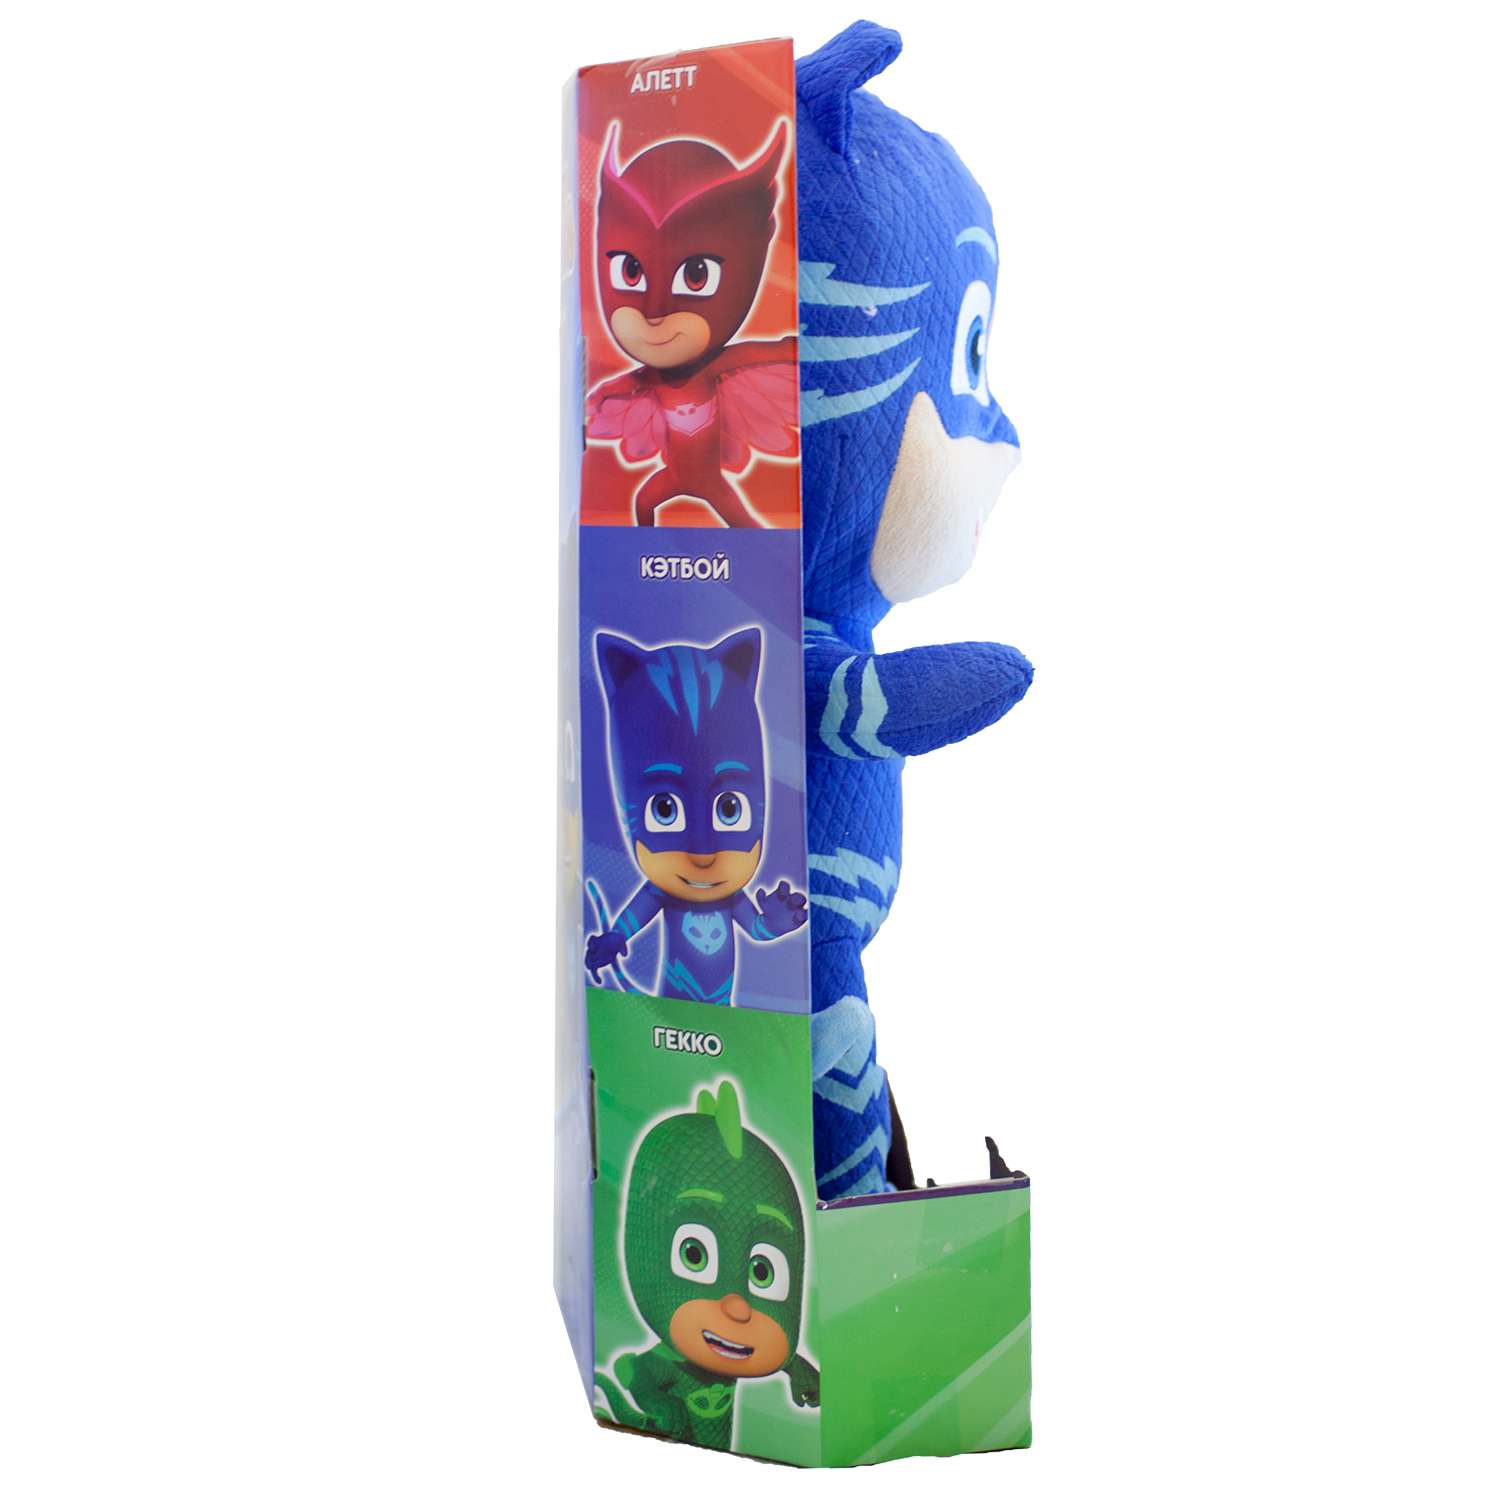 Мягкая игрушка PJ masks Кэтбой со звуком 38 см - фото 5